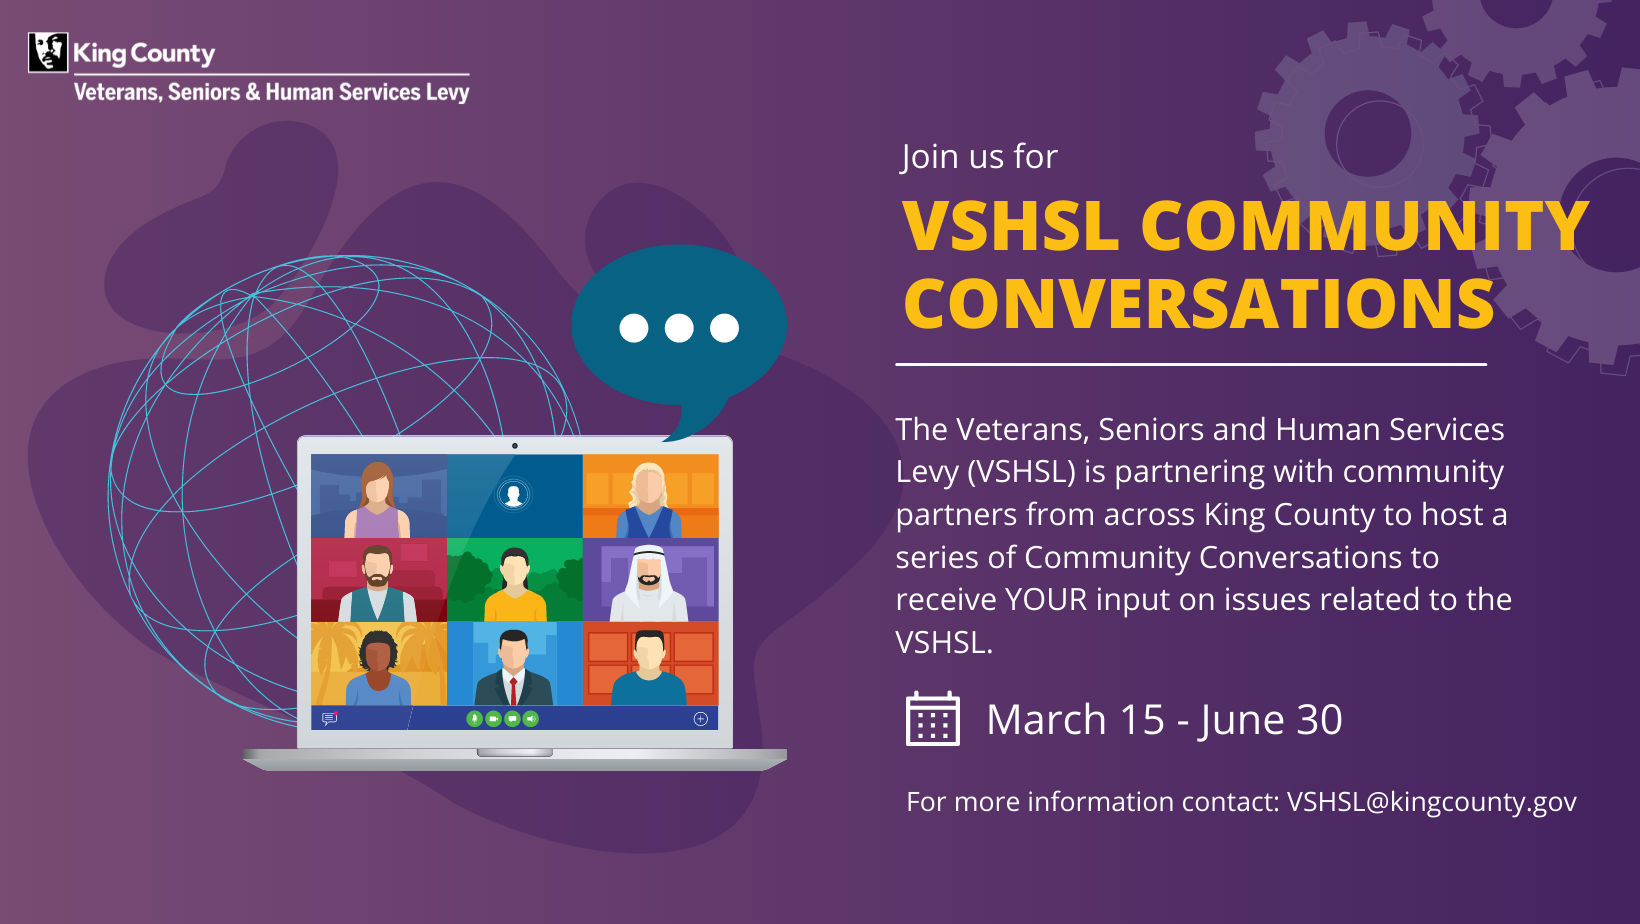 VSHSL Community Conversations